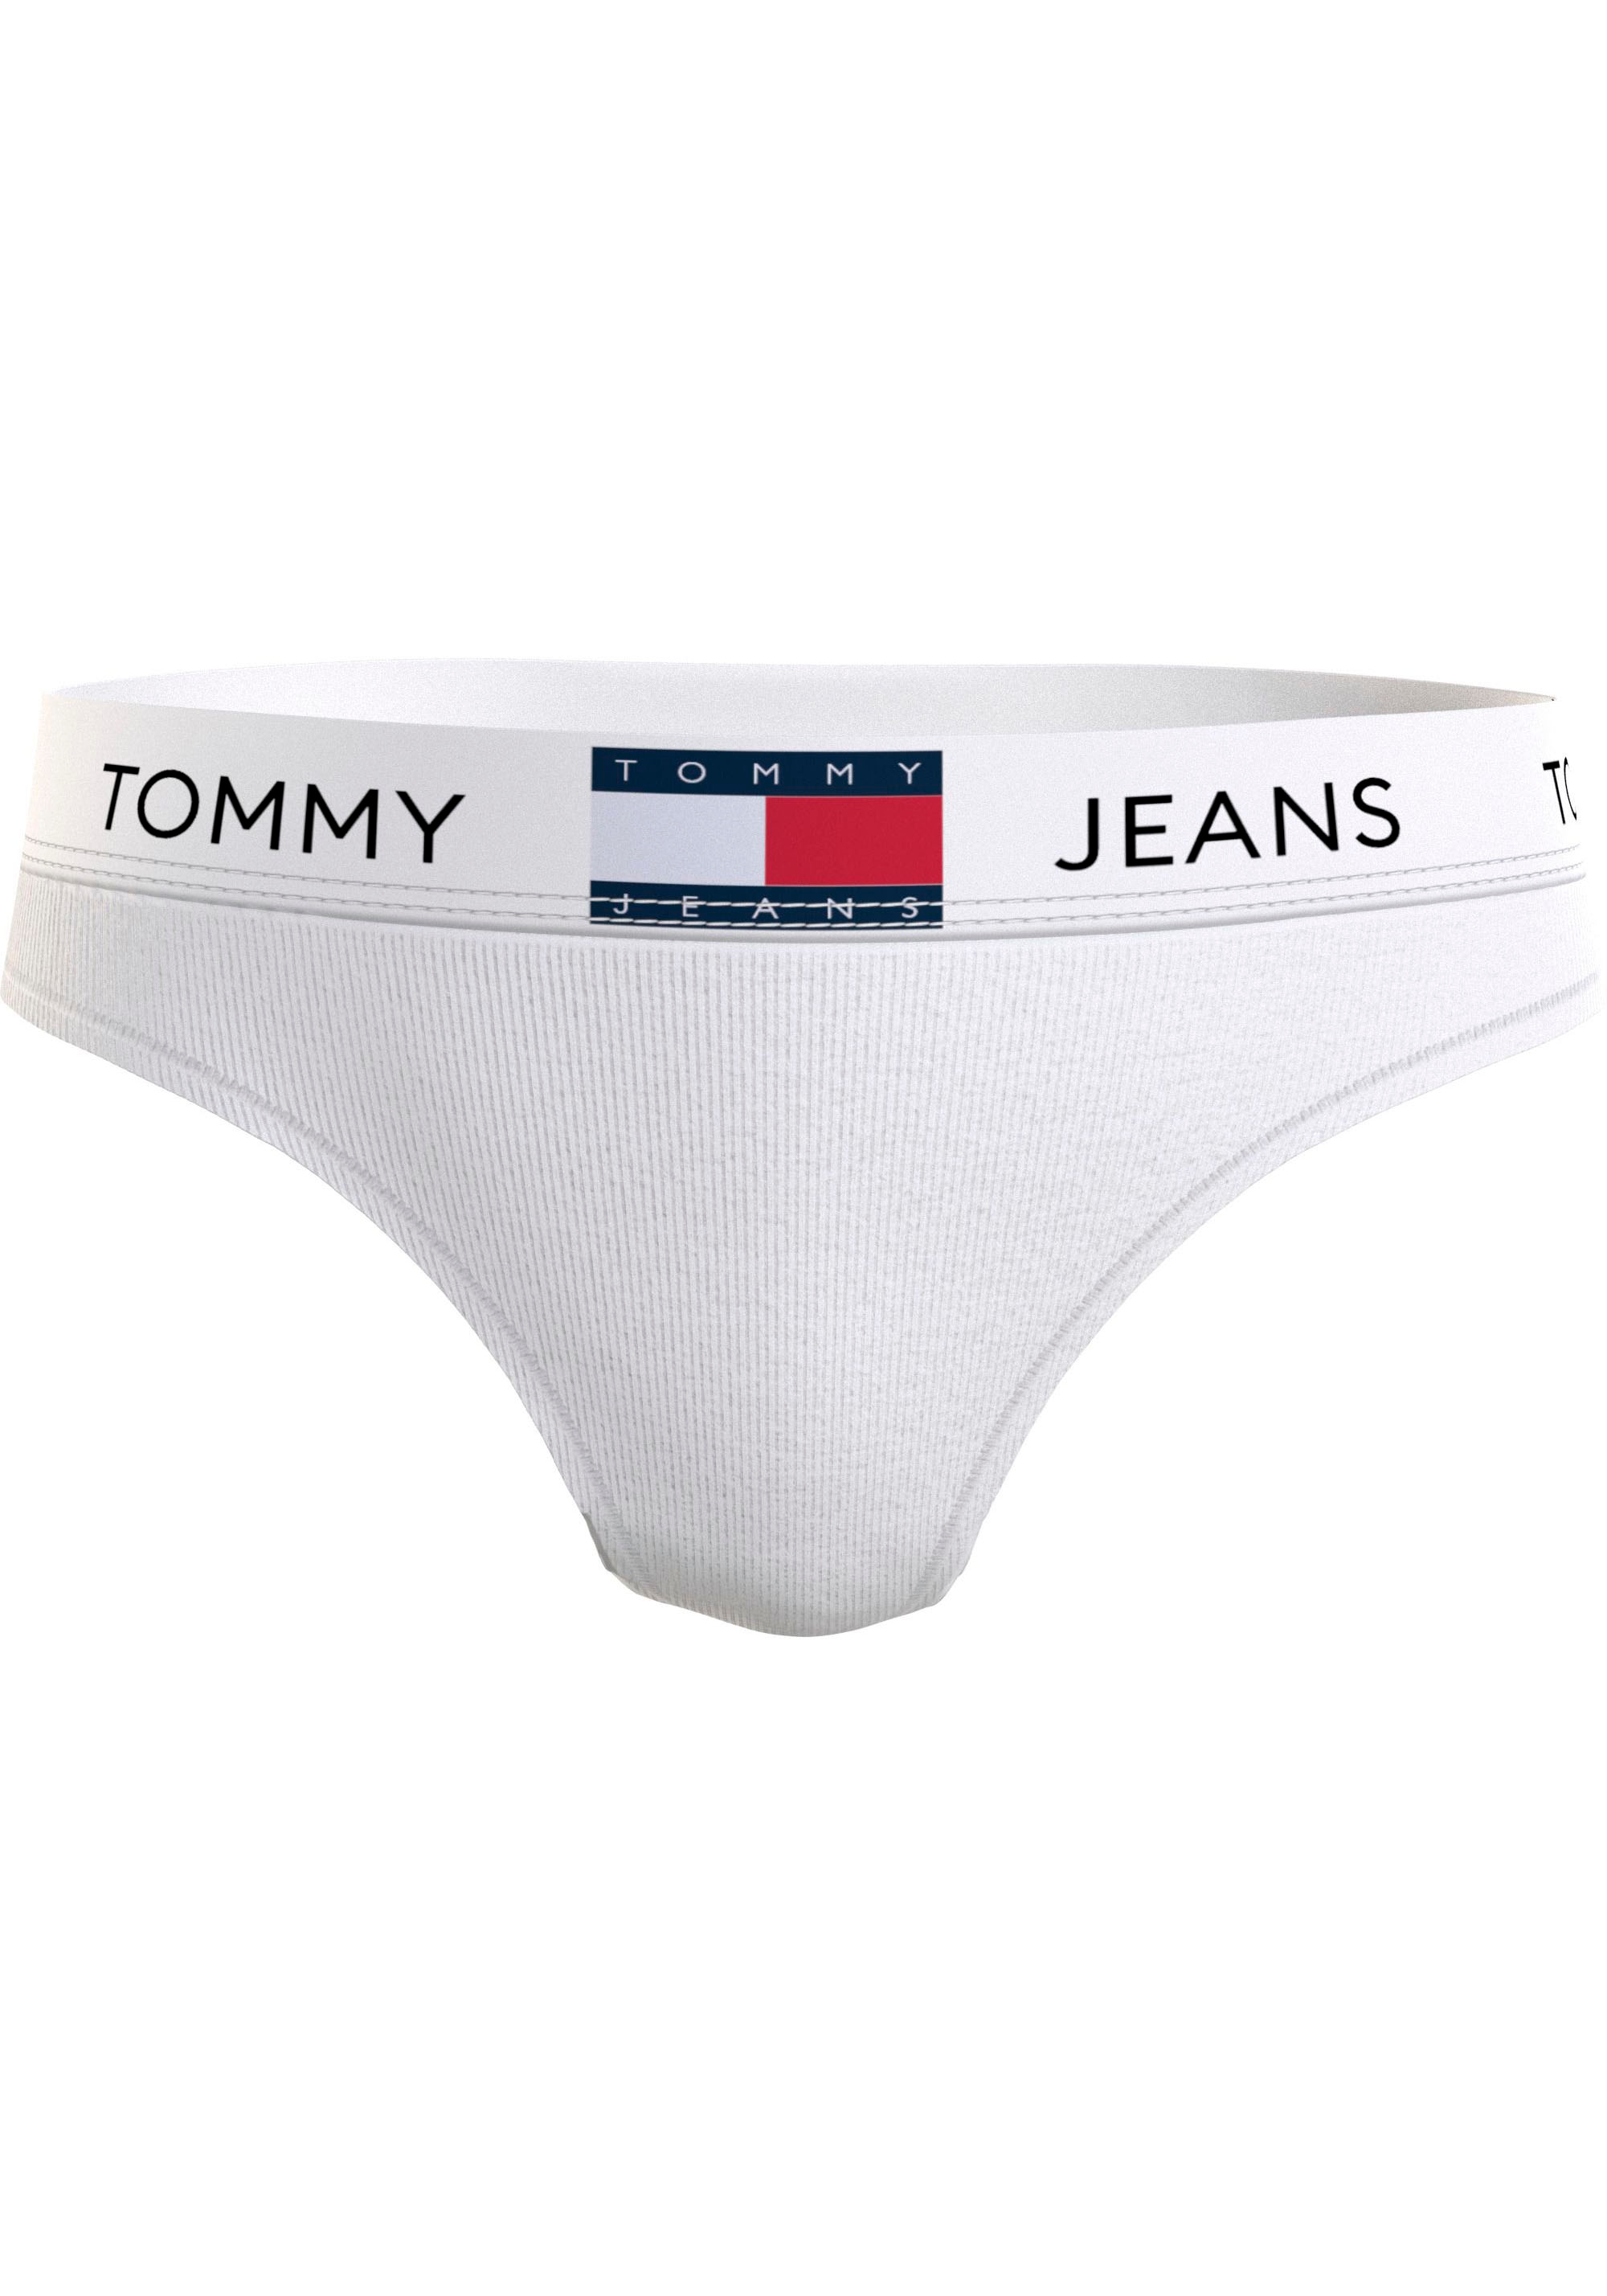 (EXT im »THONG Bund Tommy Underwear OTTO mit Hilfiger Shop T-String SIZES)«, Online elastischem